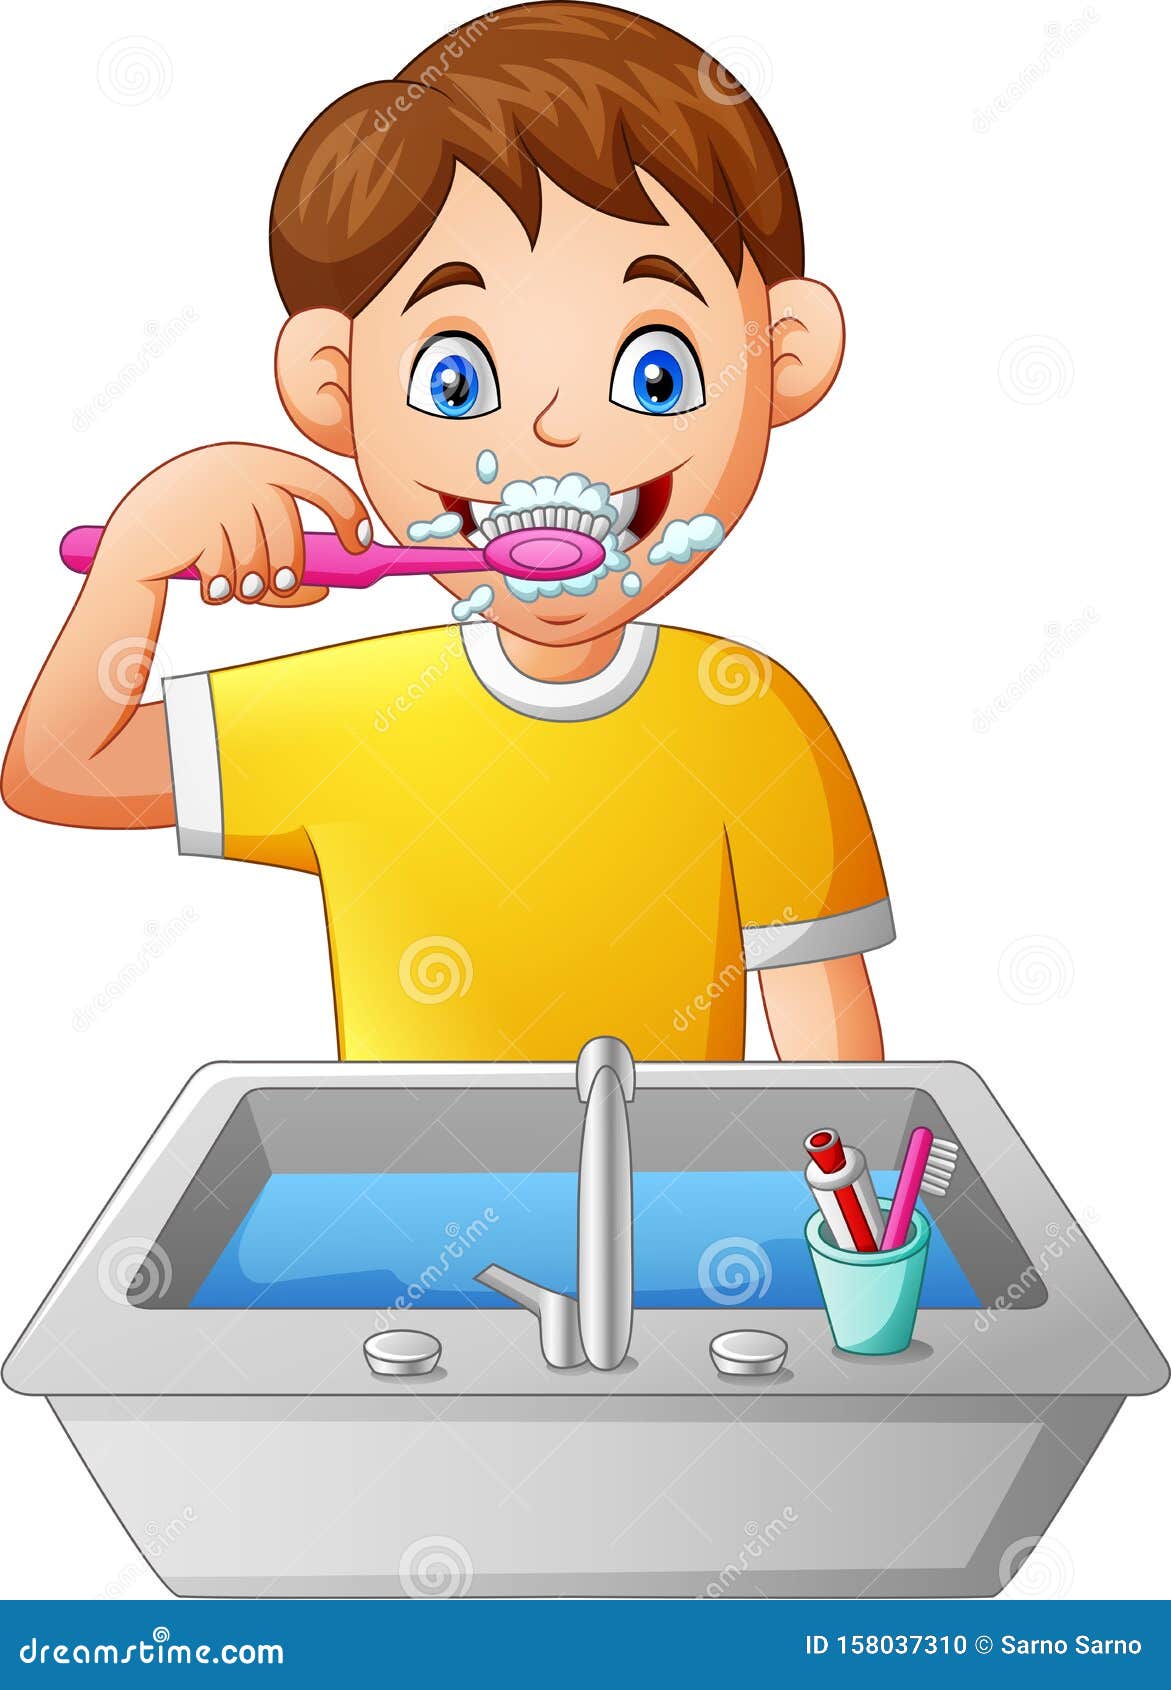 快乐的小男孩的刷牙卡通矢量 — 图库矢量图像© Onontour #159614678